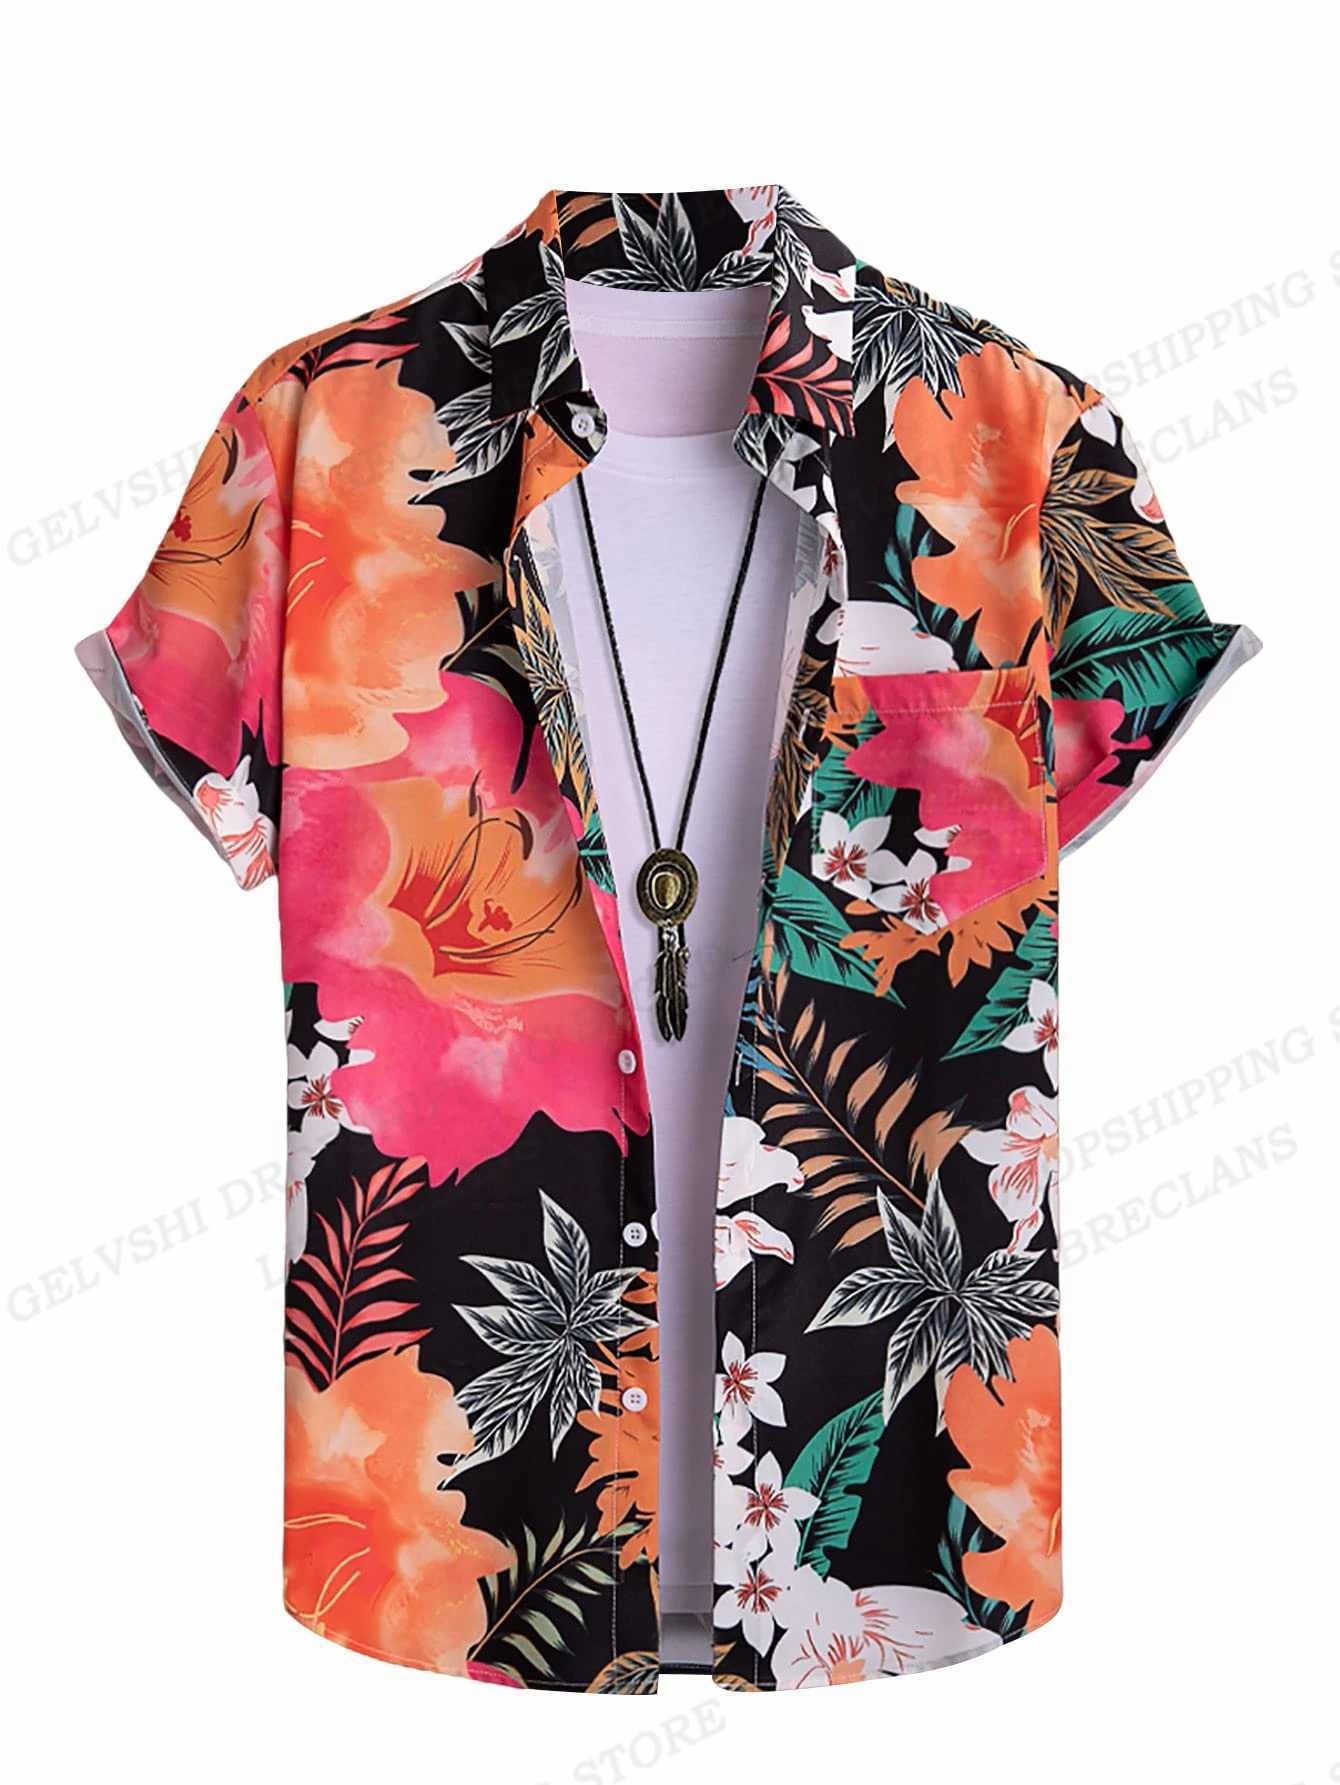 Camicie casual maschile maschile floreale vocation hawaian campetion beach bluse camicia lapel cuba gira-down-down abbigliamento 24416 24416